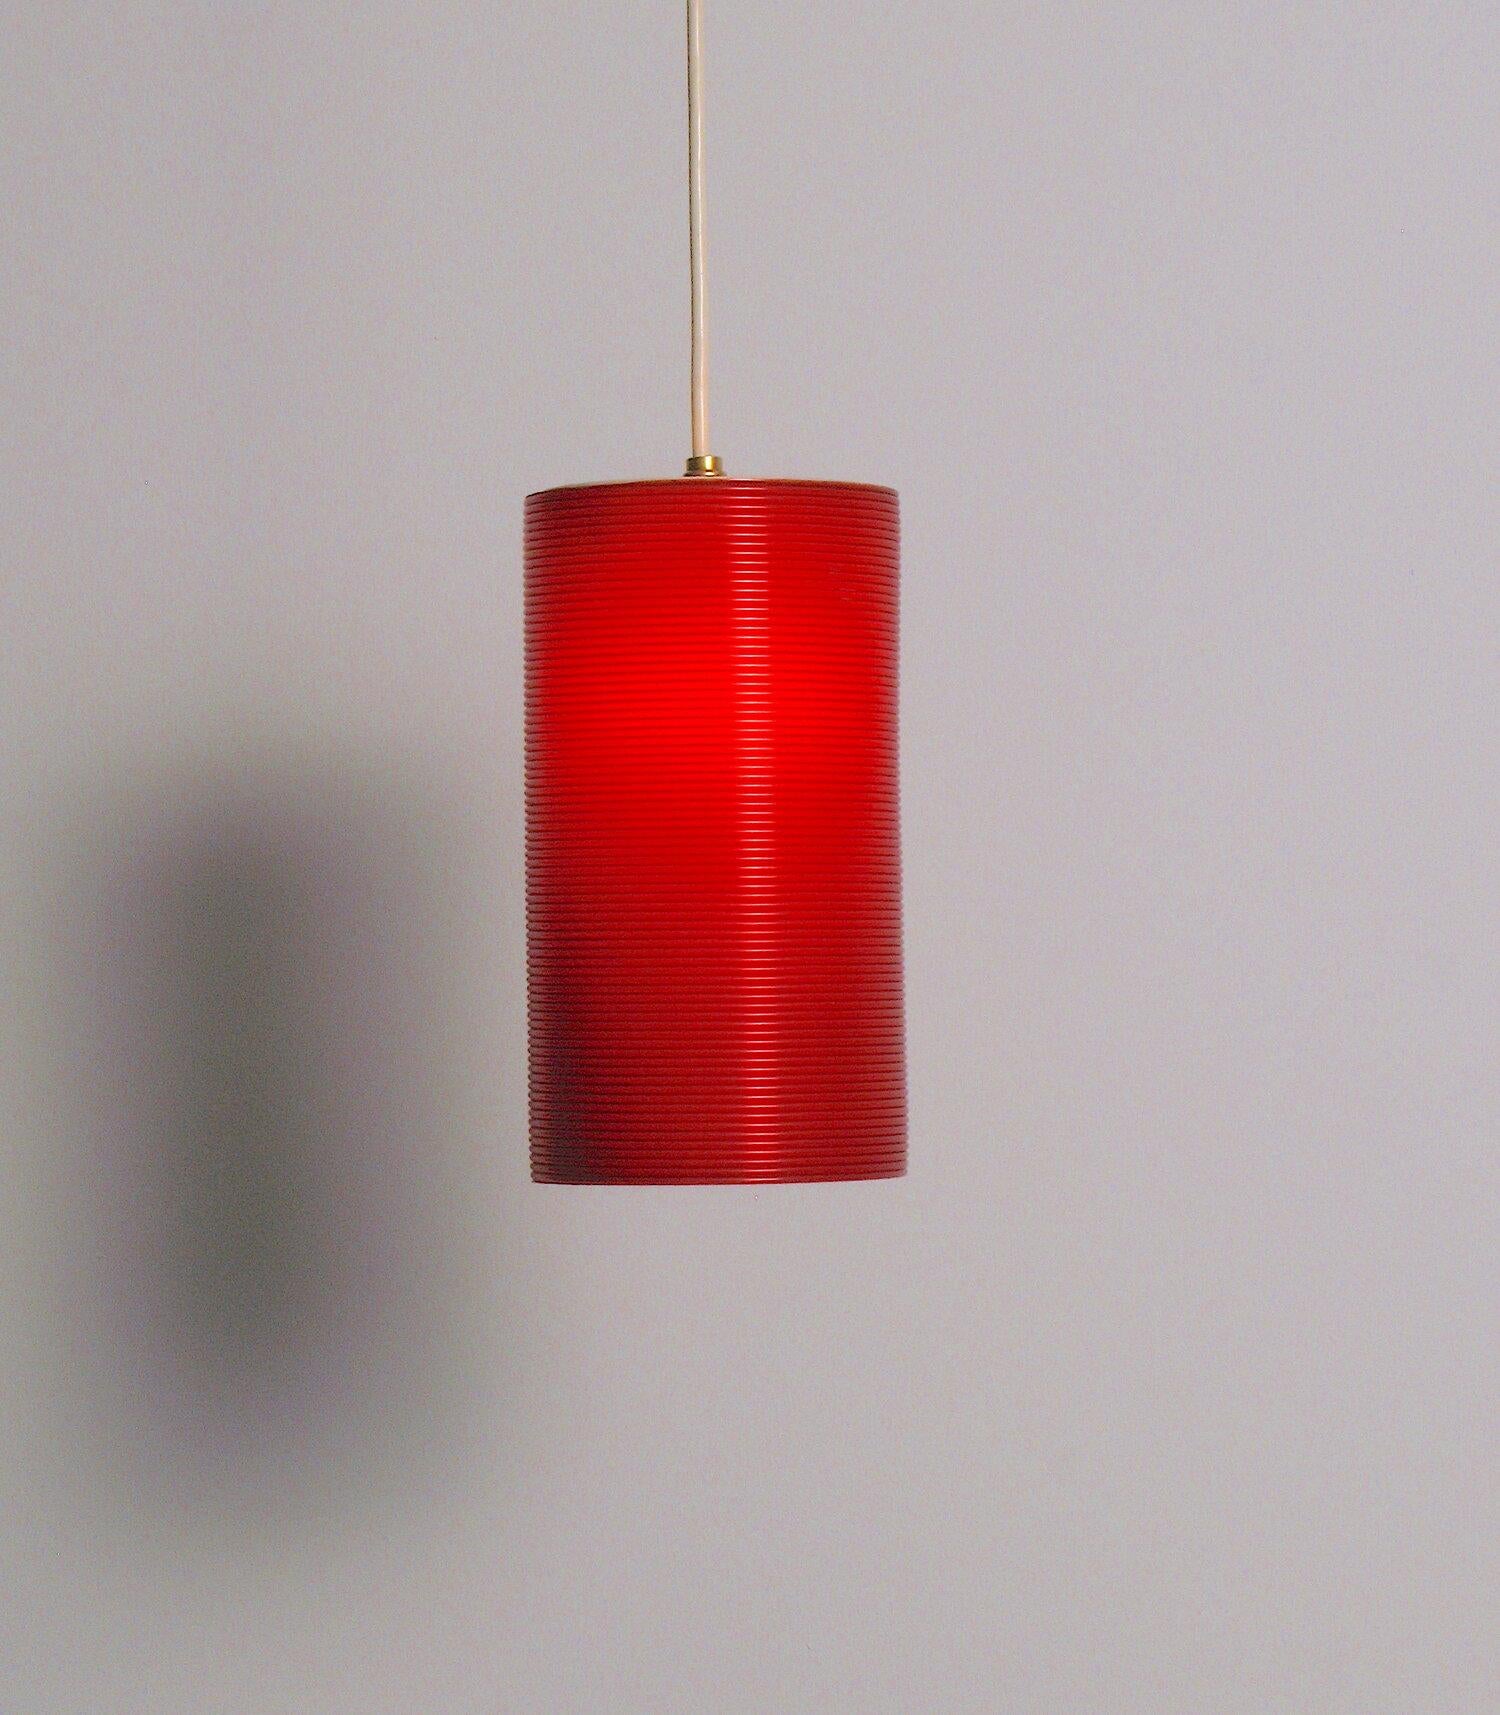 Rubinrote, röhrenförmige Lampe, entworfen von John und Sylvia Reid für Rotaflex. Neu verdrahtet mit einer E-12-Kandelaber-Fassung und einem runden Kunststoffkabel.